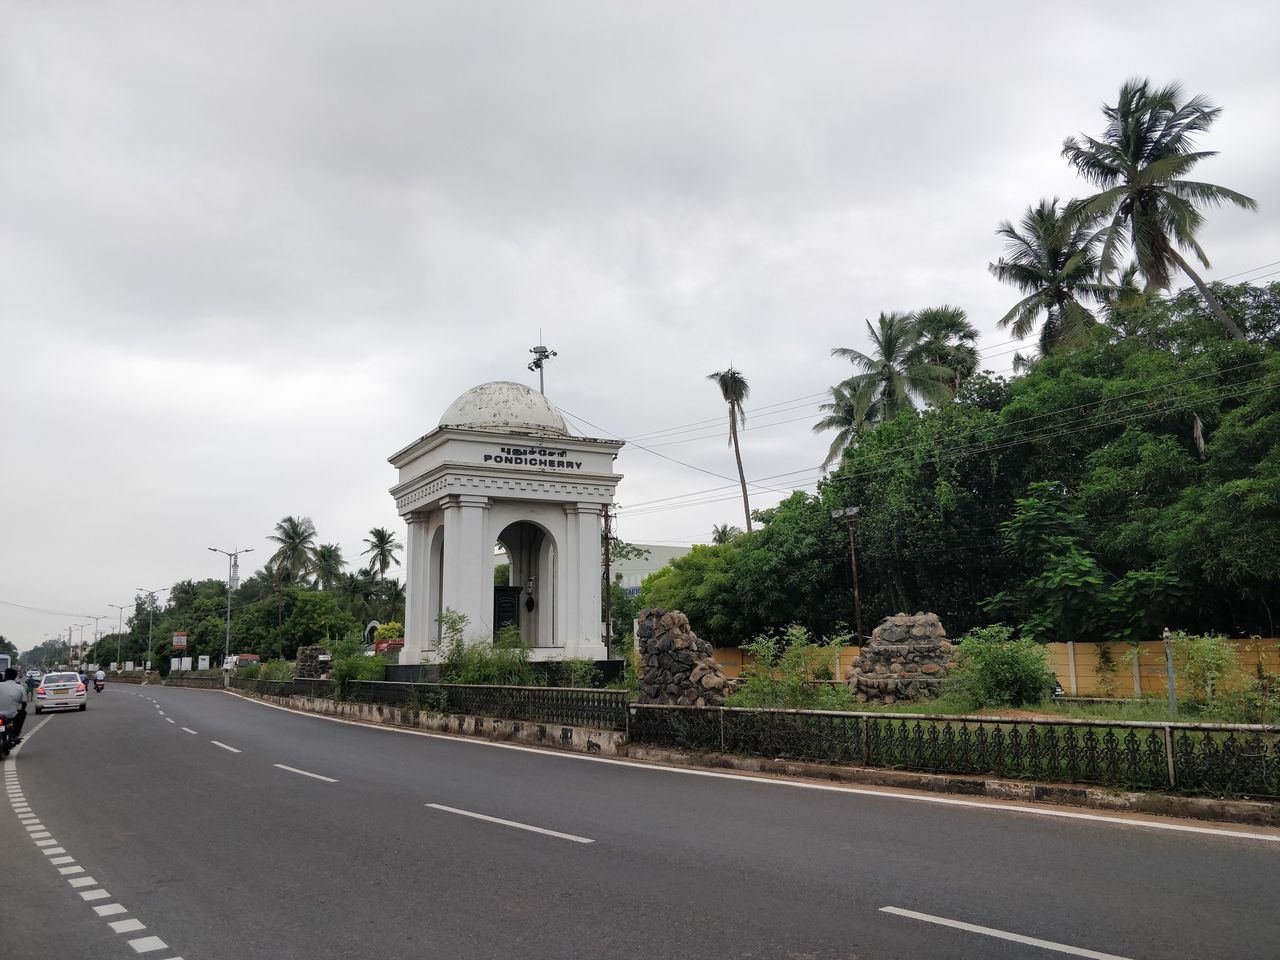 reached Pondicherry around 9.30